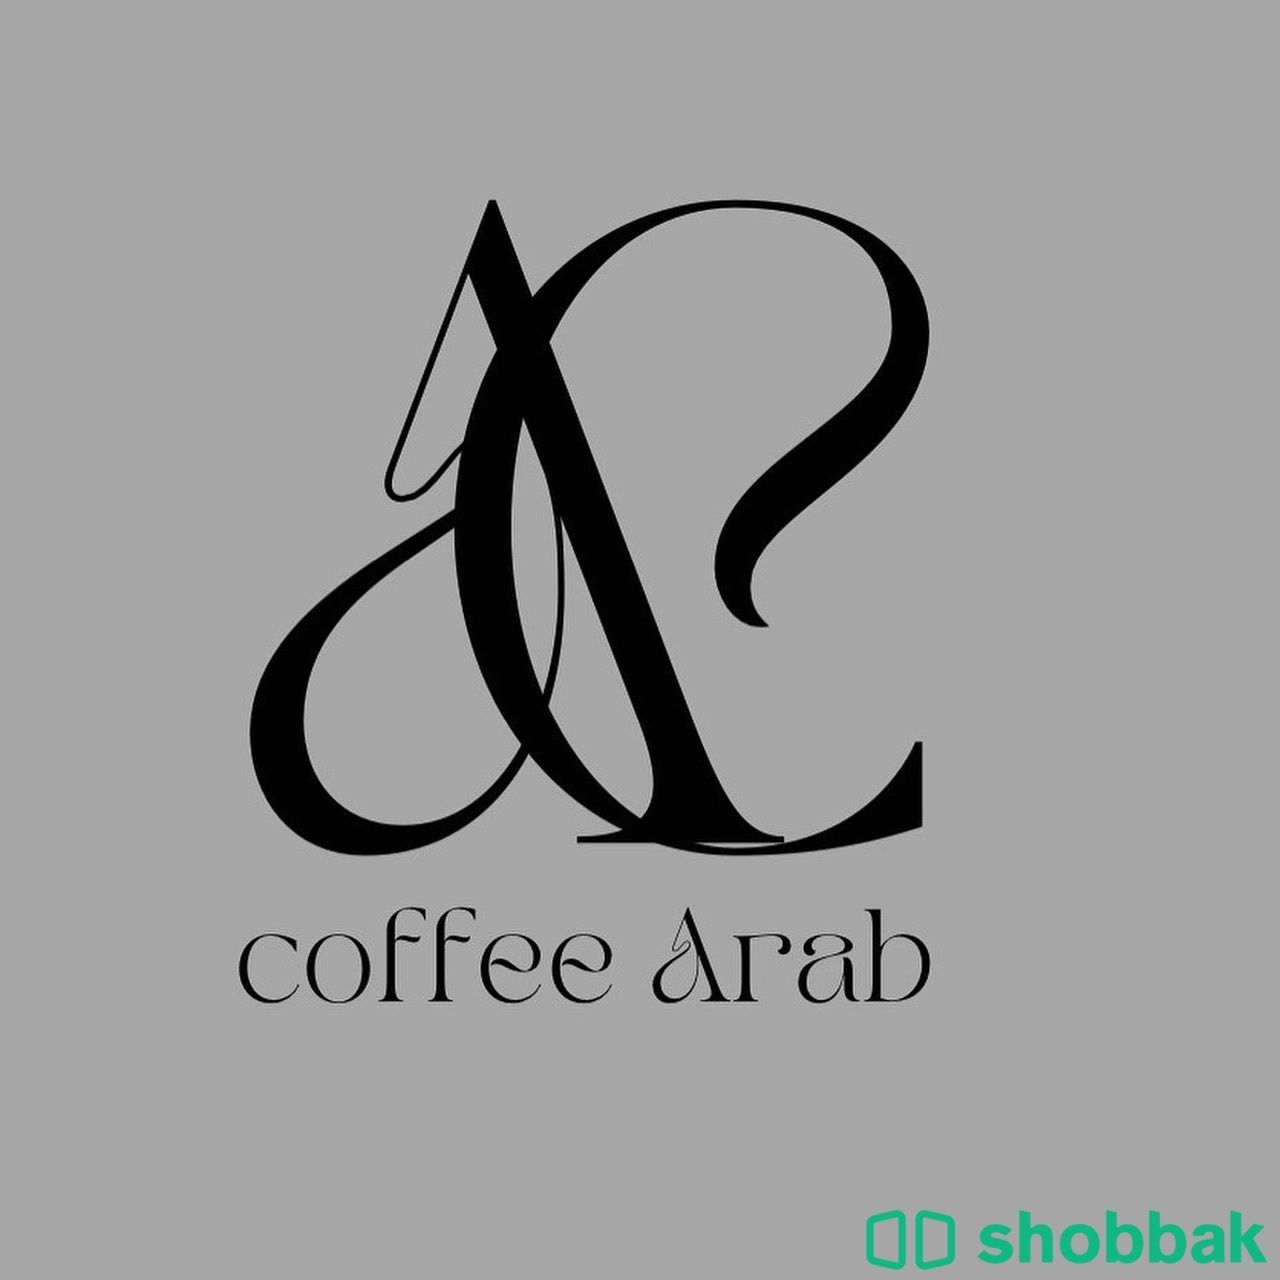 تصميم متاجر وكل ما تحتاج اليه Shobbak Saudi Arabia